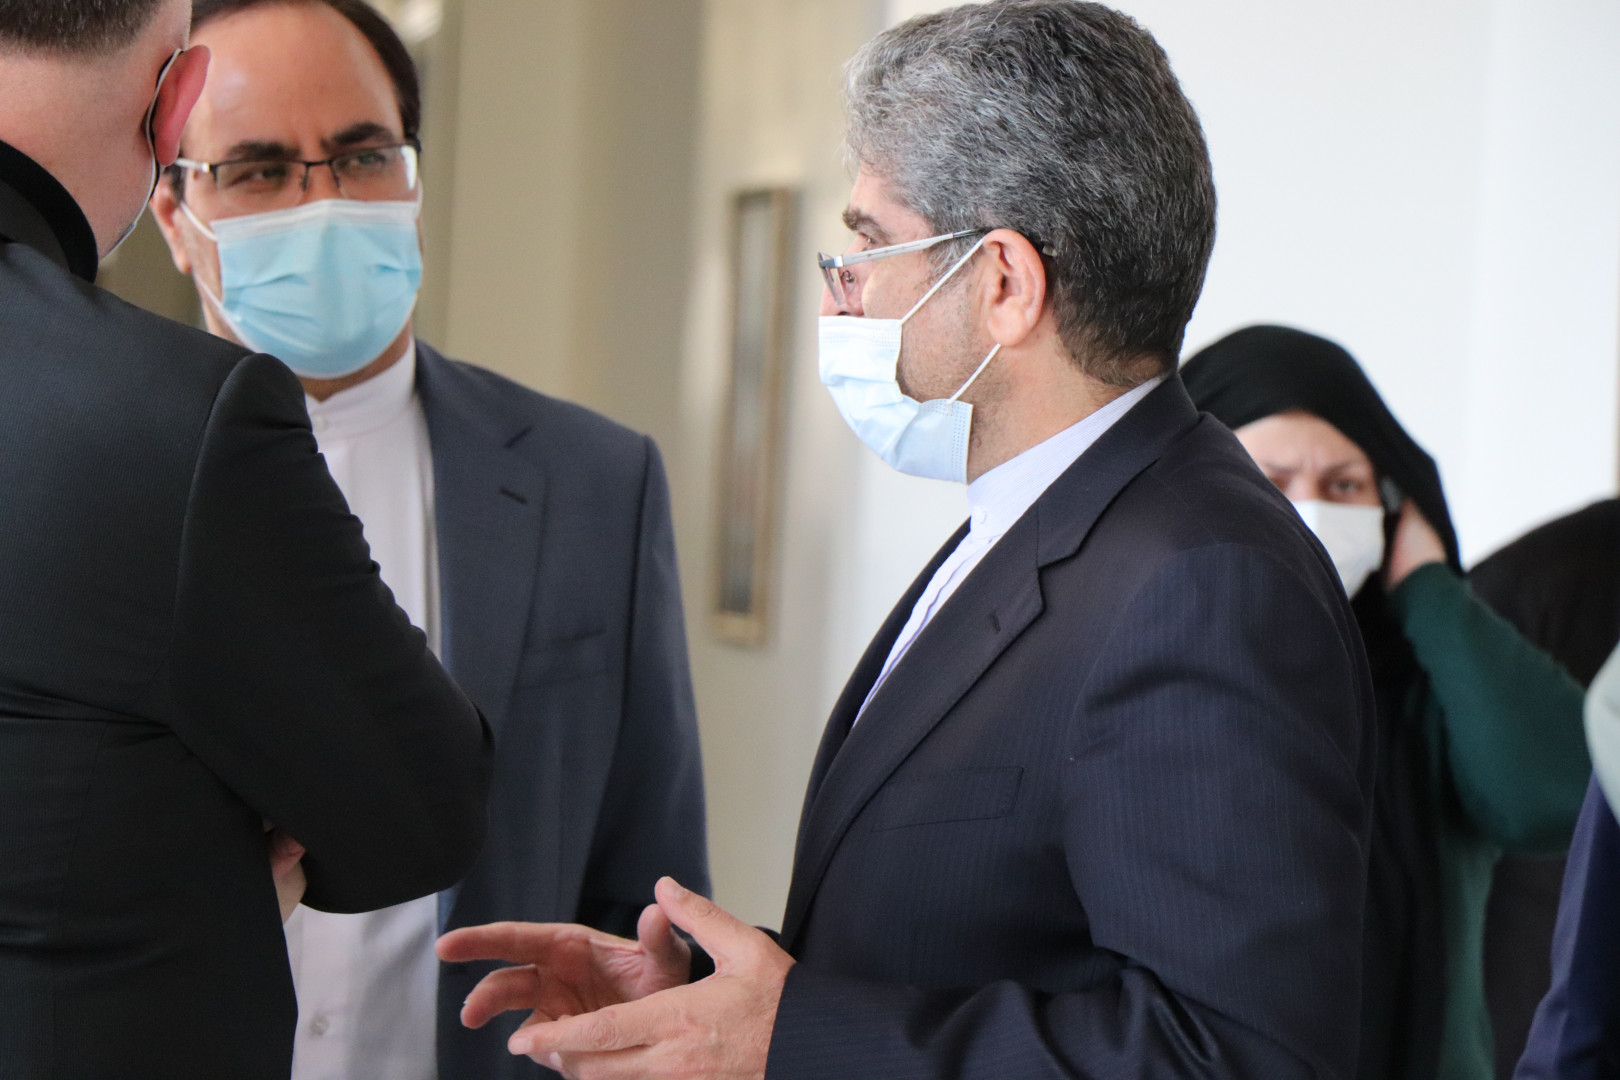  საქართველოში ირანის ისლამური რესპუბლიკის ახალი ელჩის პირველი სამეცნიერო ვიზიტი კავკასიის უნივერსიტეტში